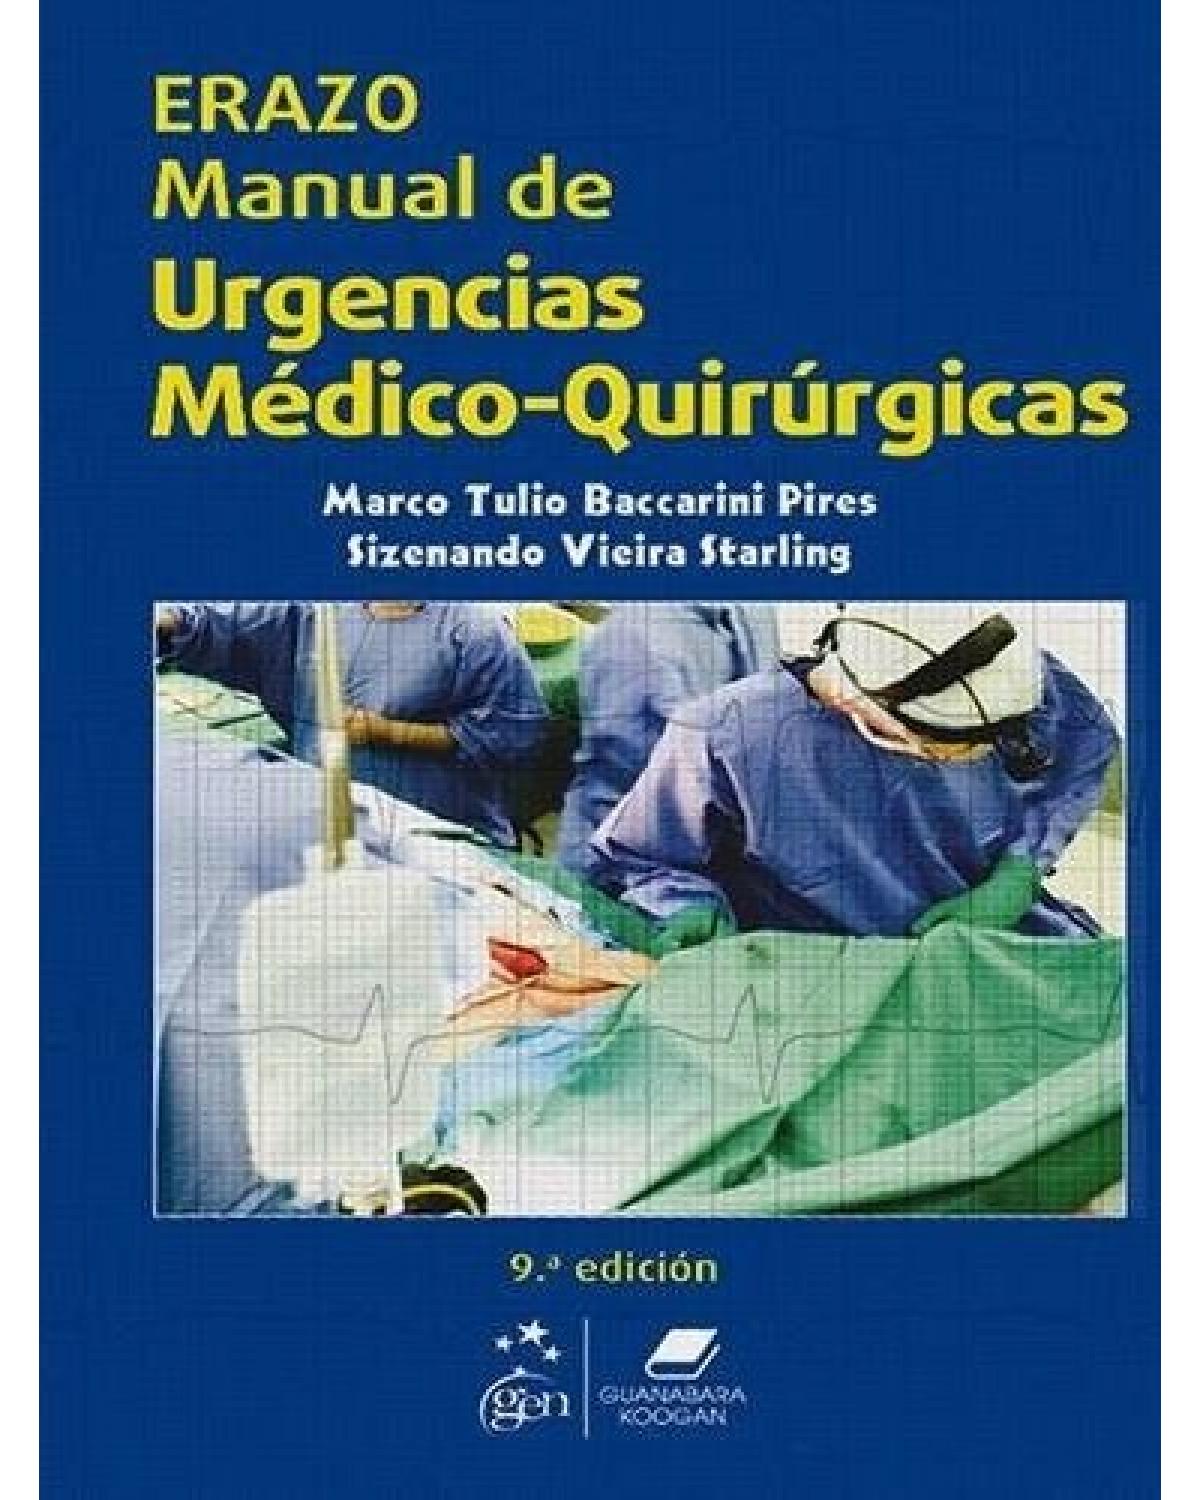 Erazo - Manual de urgencias médico-quirúrgicas - 9ª Edição | 2012